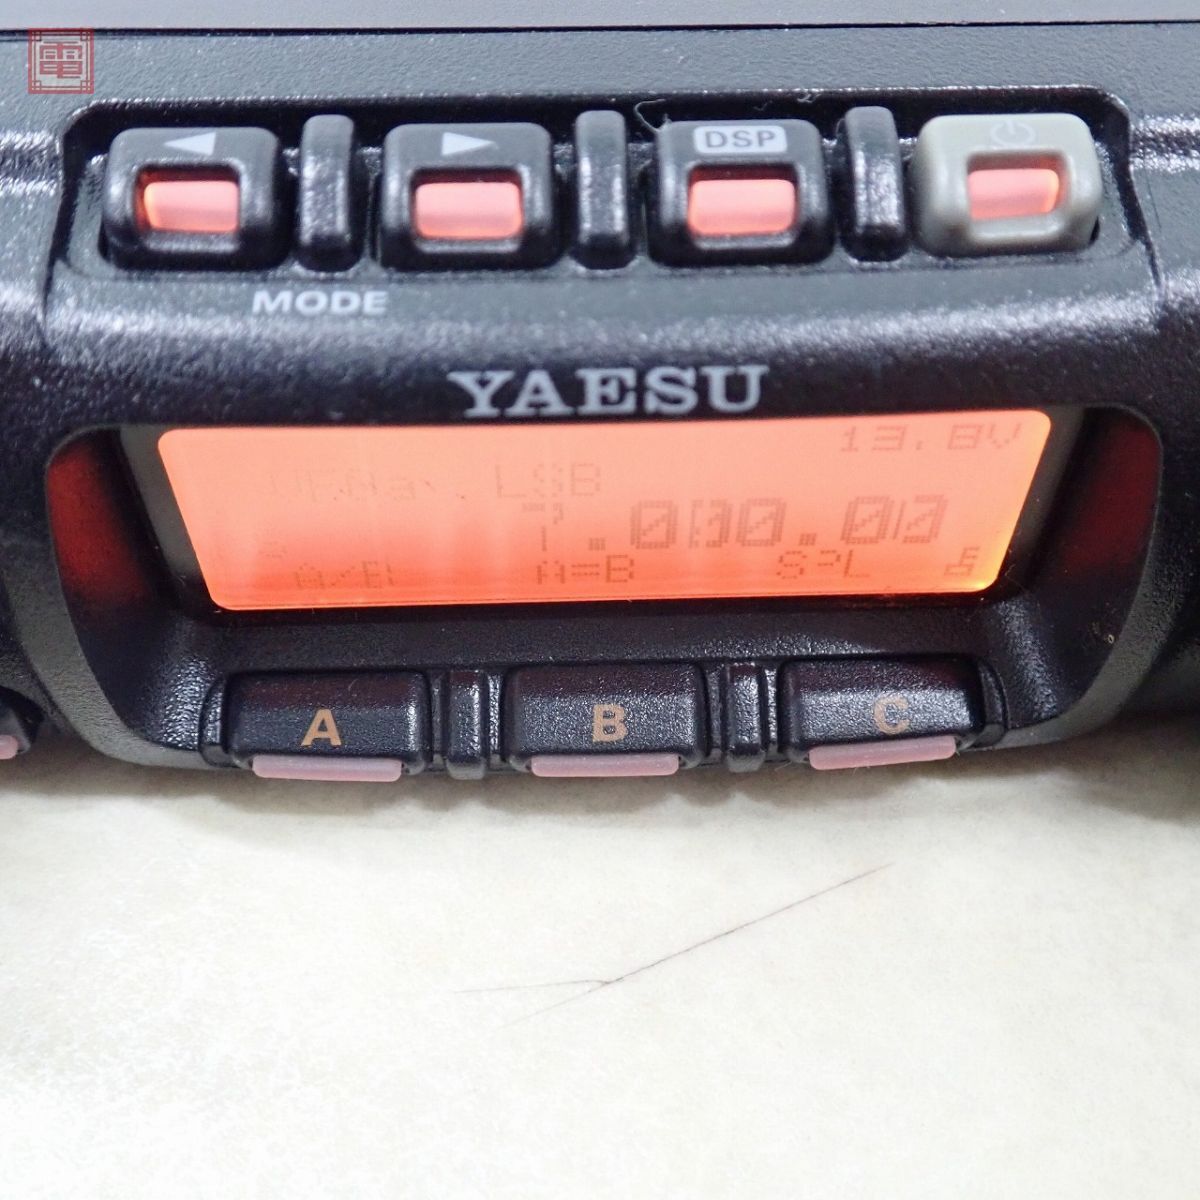  Yaesu FT-857D HF obi /50/144/430MHz 100W/50W/20W с руководством пользователя Yaesu [20